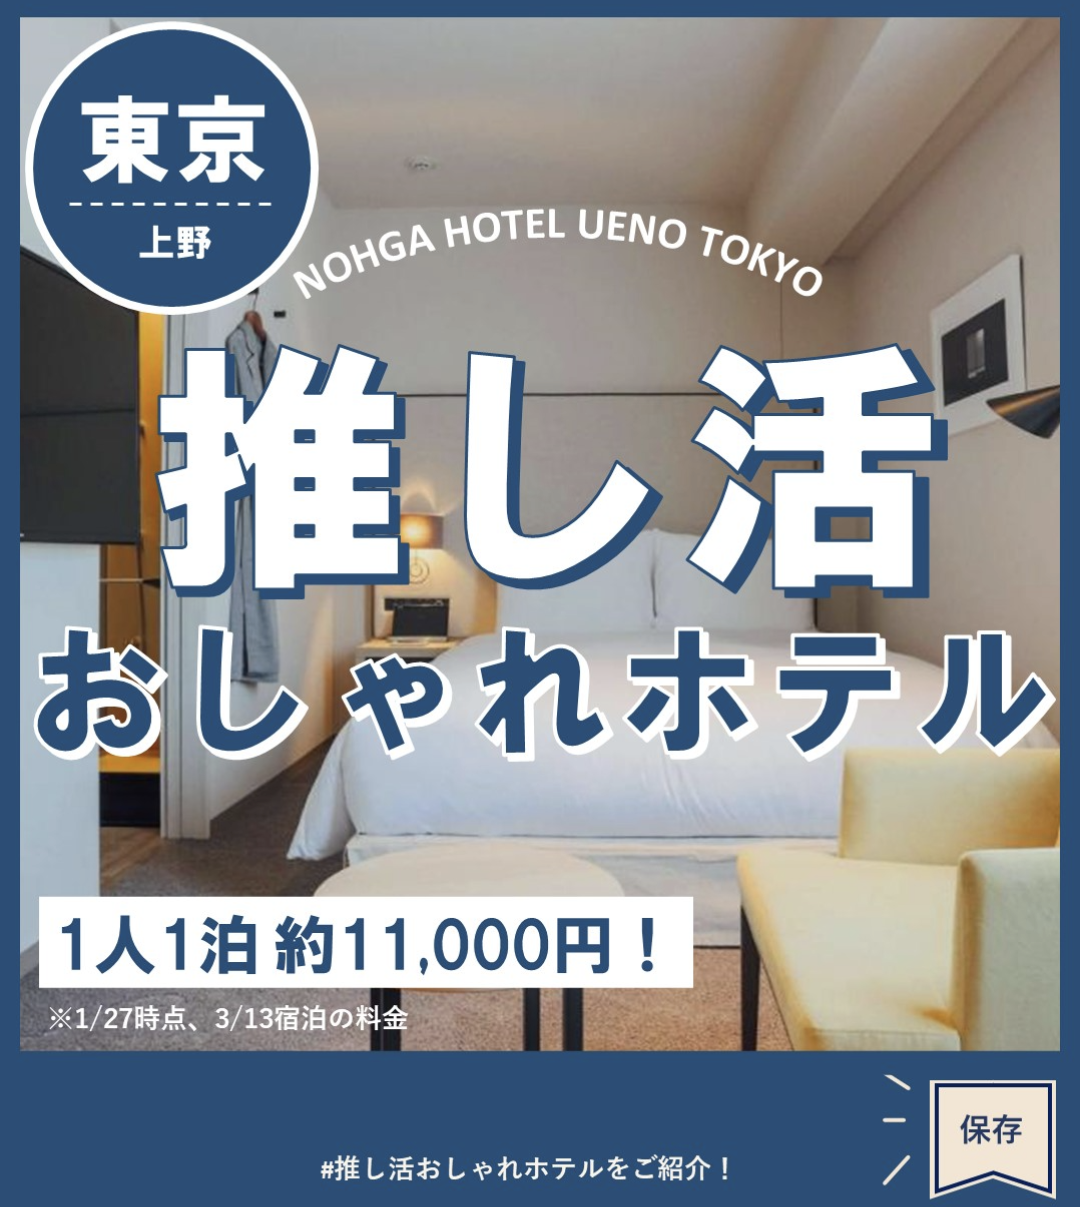 NOHGA HOTEL UENO TOKYO